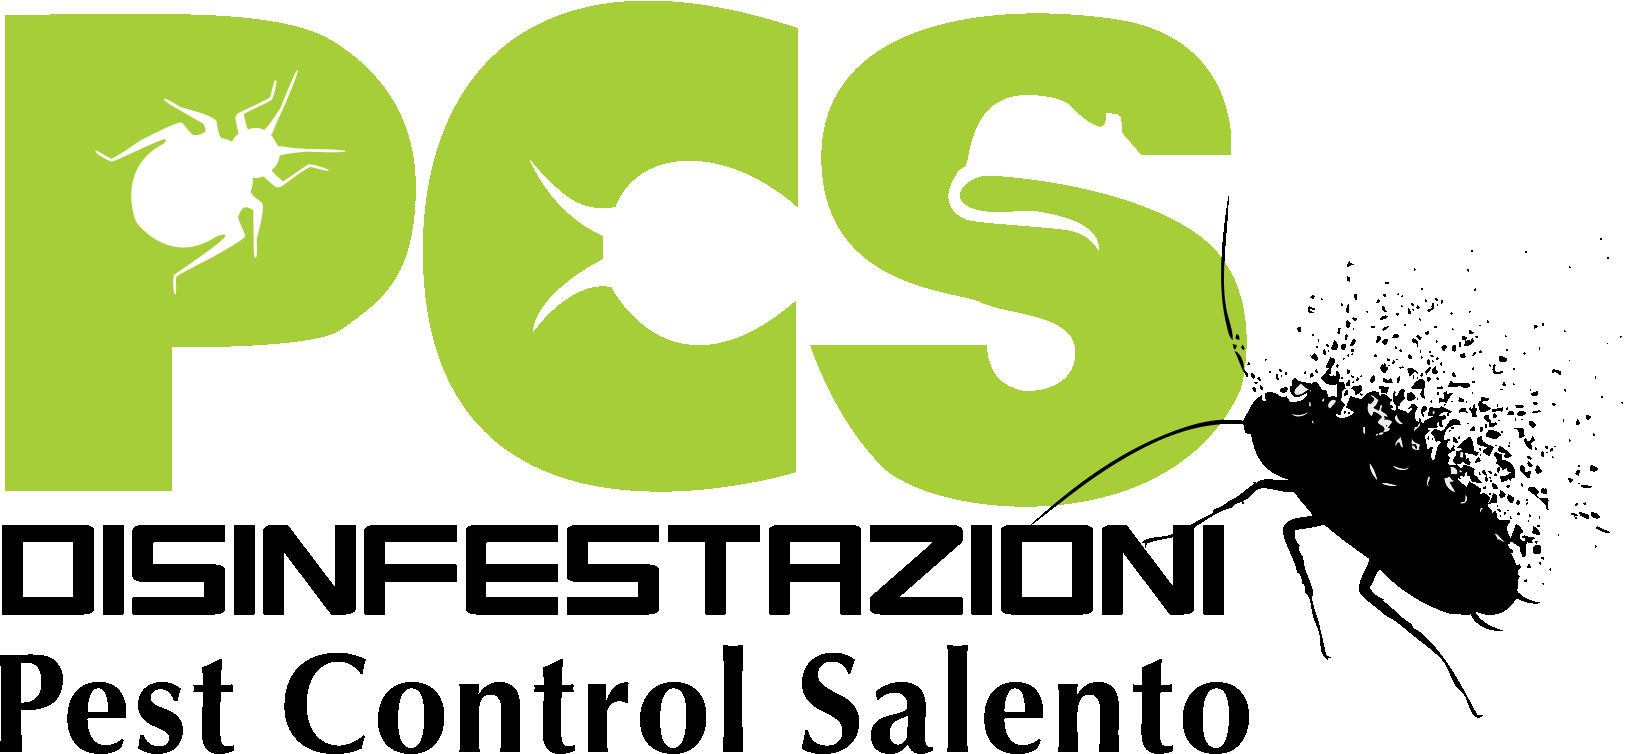 PEST CONTROL SALENTO